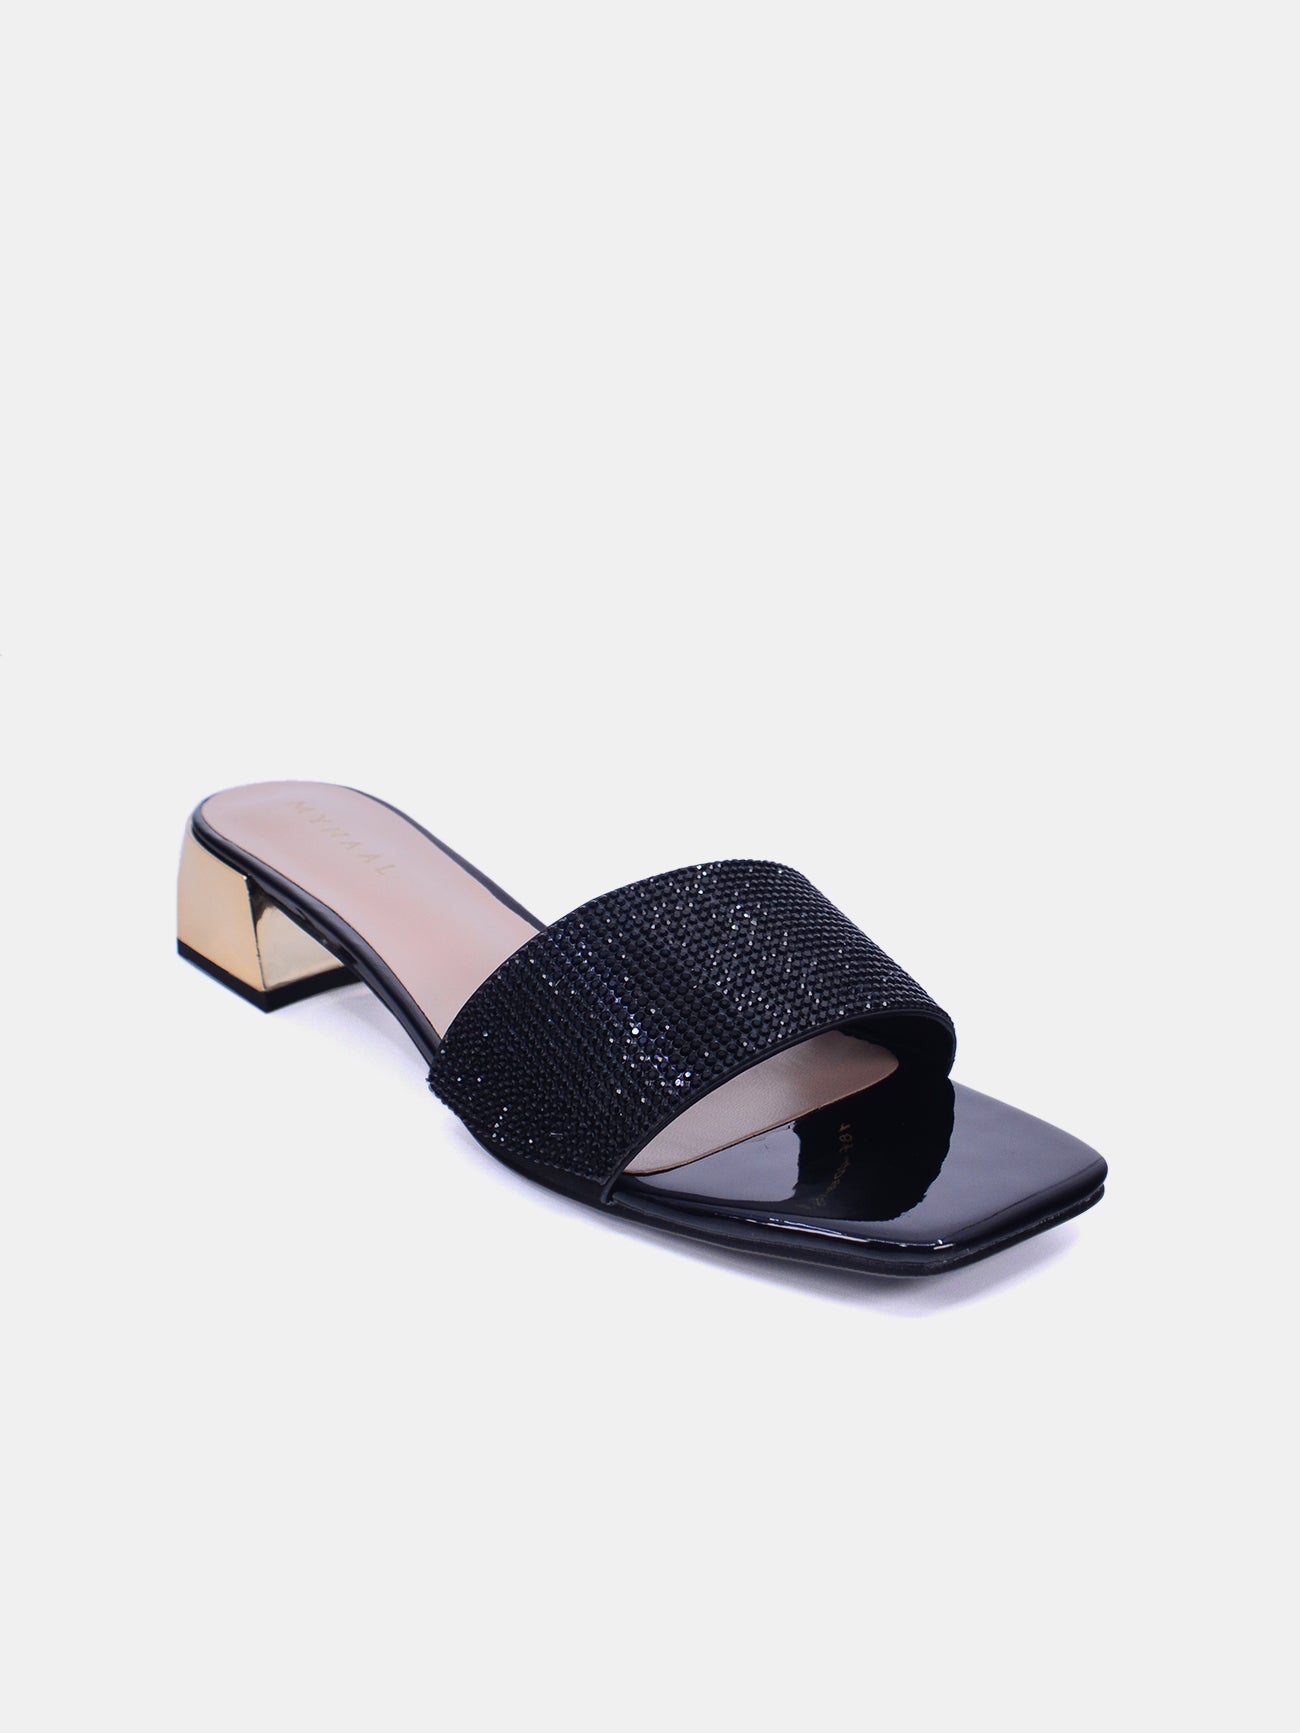 Mynaal Starling Women's Block Heel Sandals #color_Black